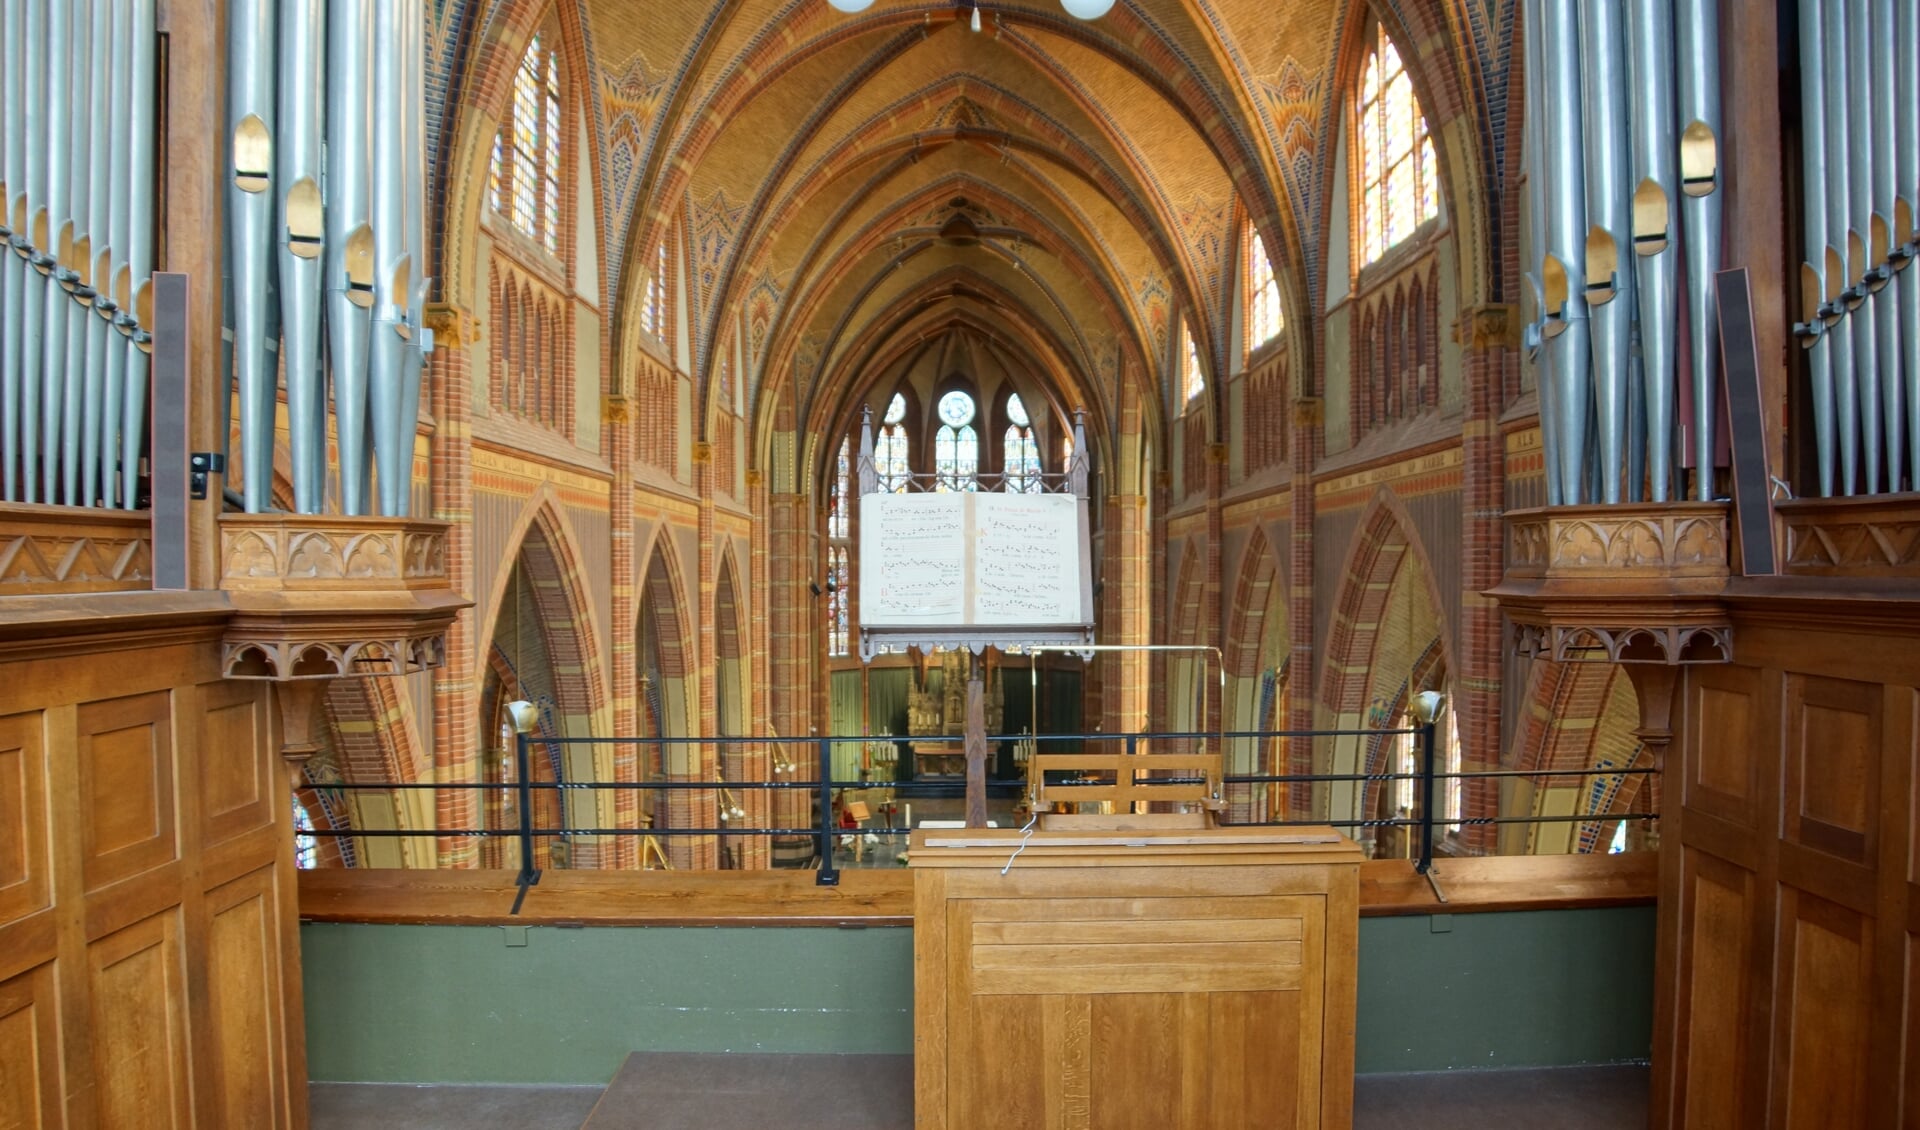 Het Adema-orgel in de Agathakerk wordt 12 mei bespeeld door vijf organisten.